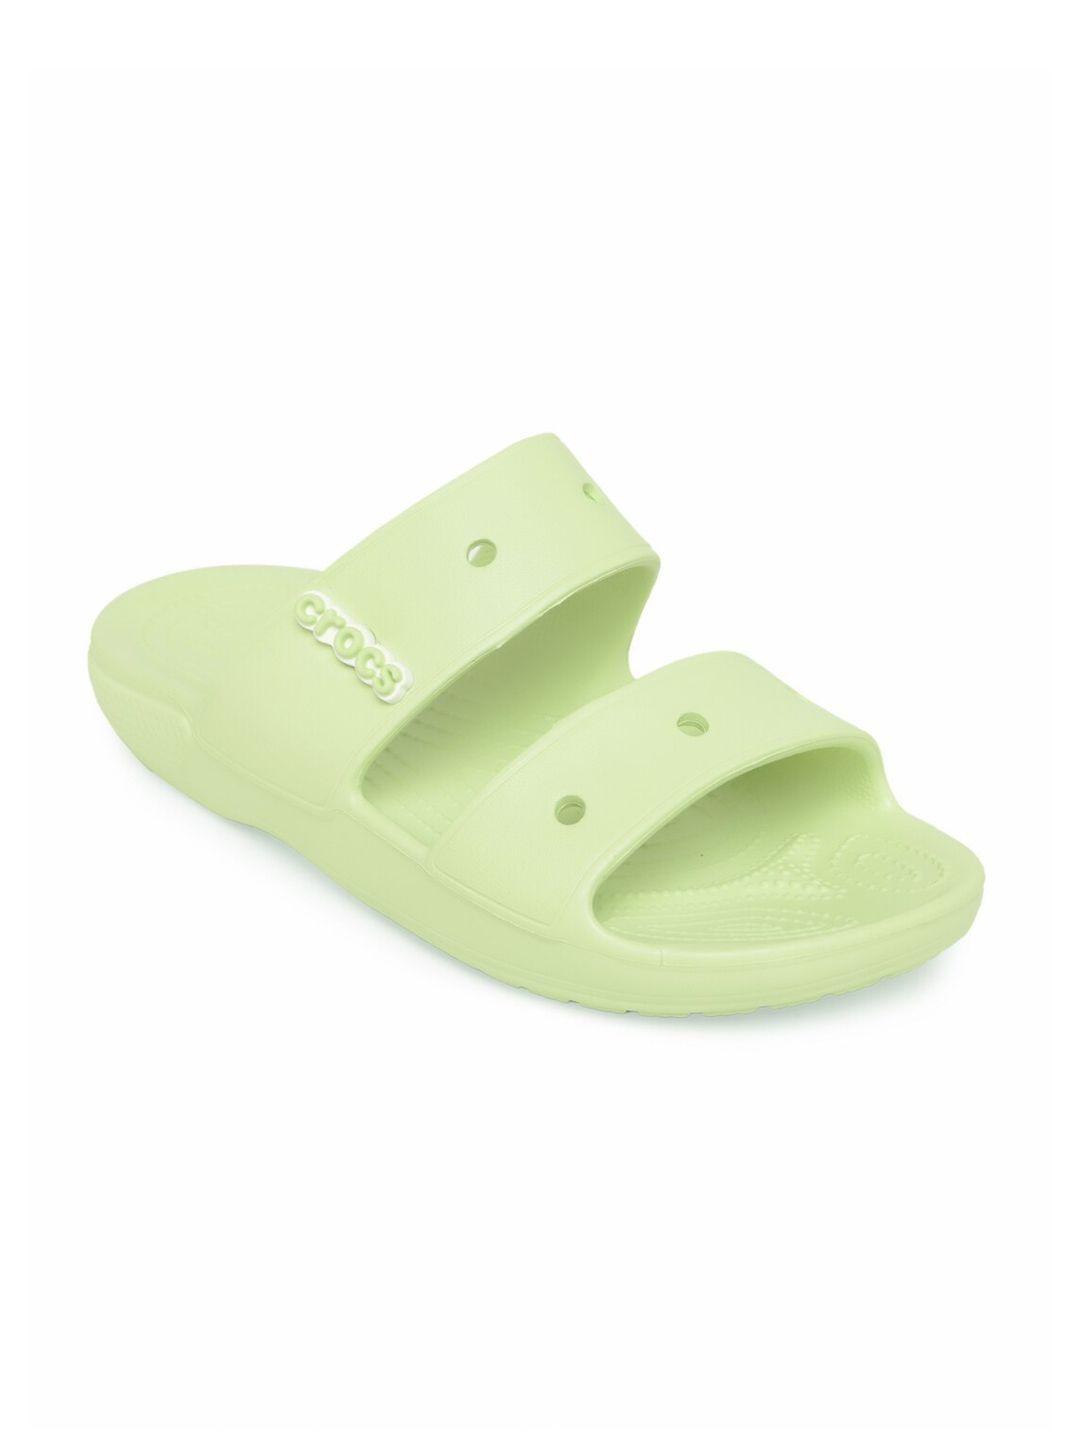 crocs unisex green comfort sandals